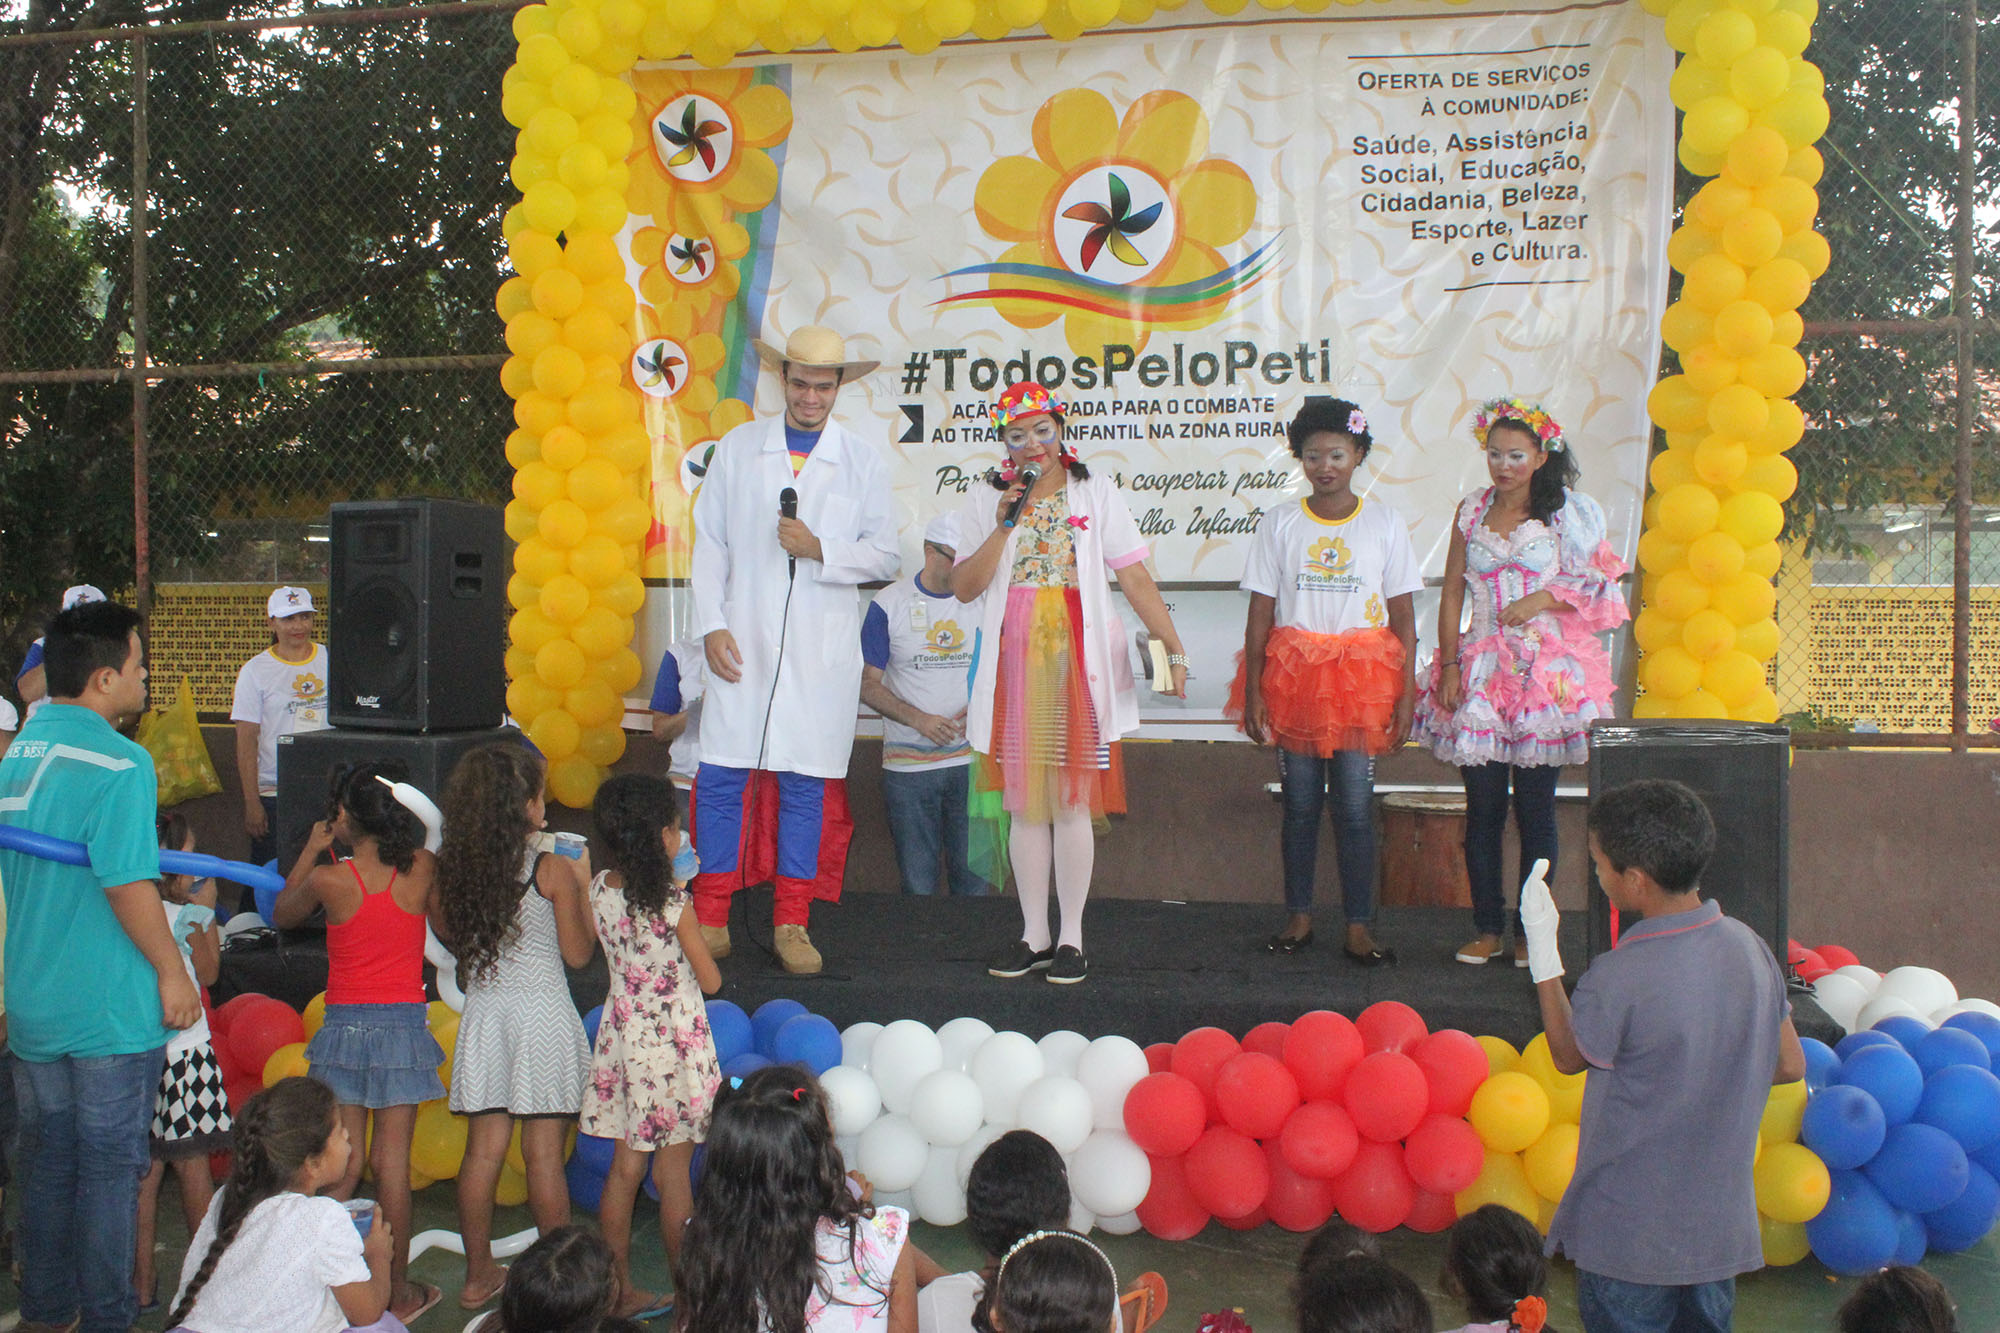  Populares da vila Sanção recebem atendimentos da 1ªAção Integrada de Combate ao Trabalho Infantil